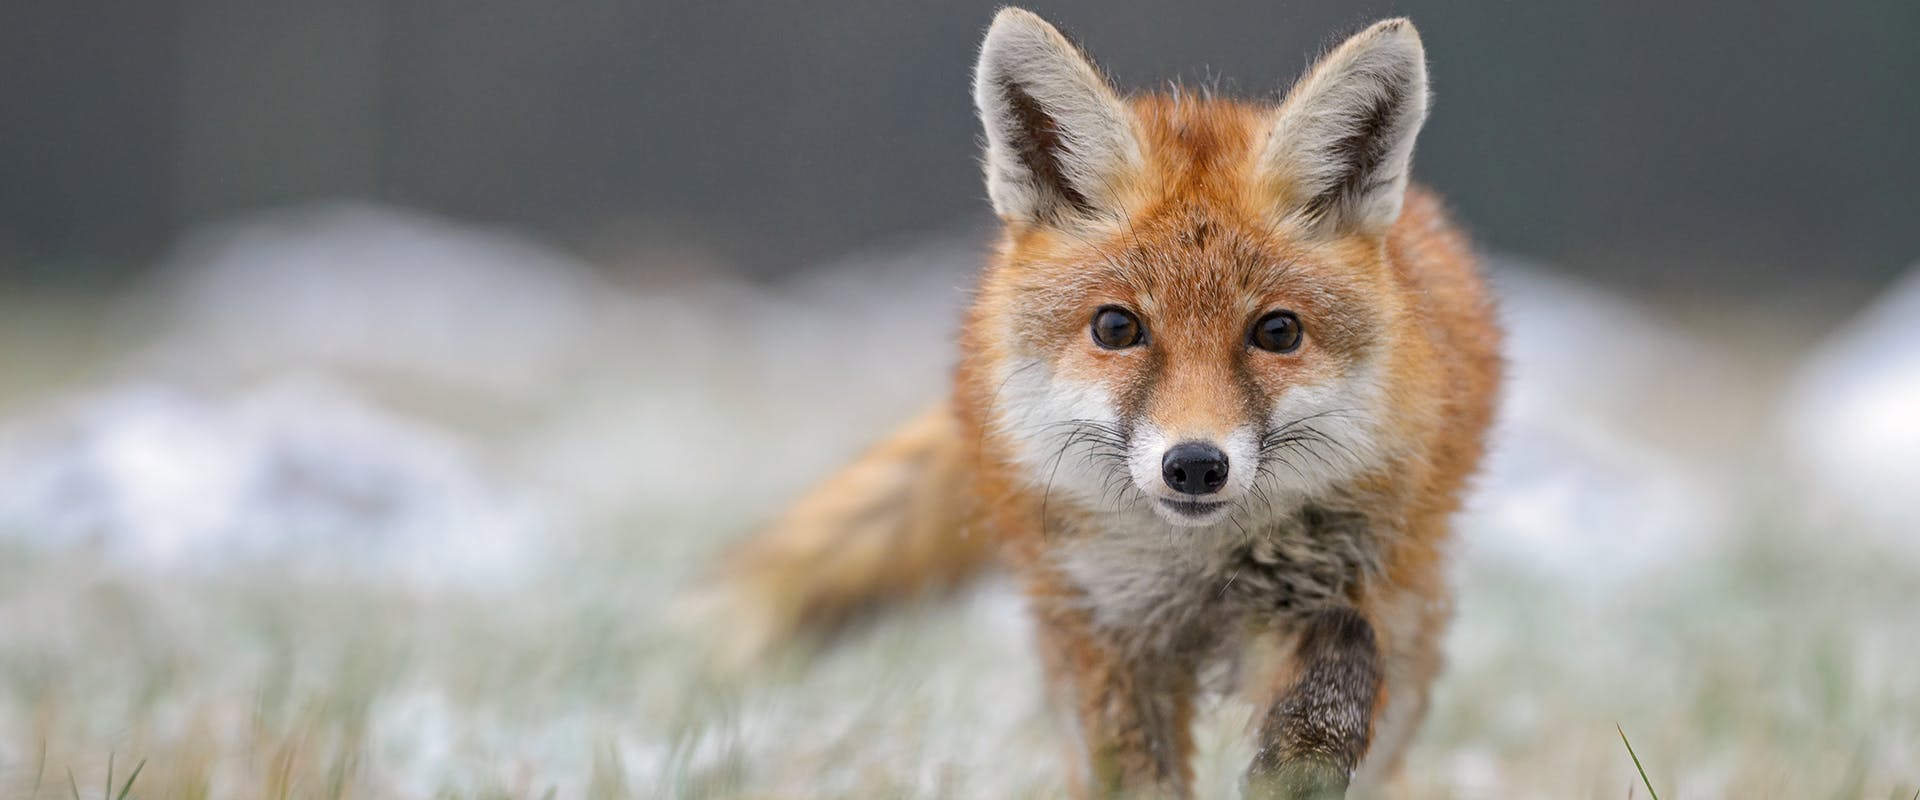 A fox walking through snow-covered grass